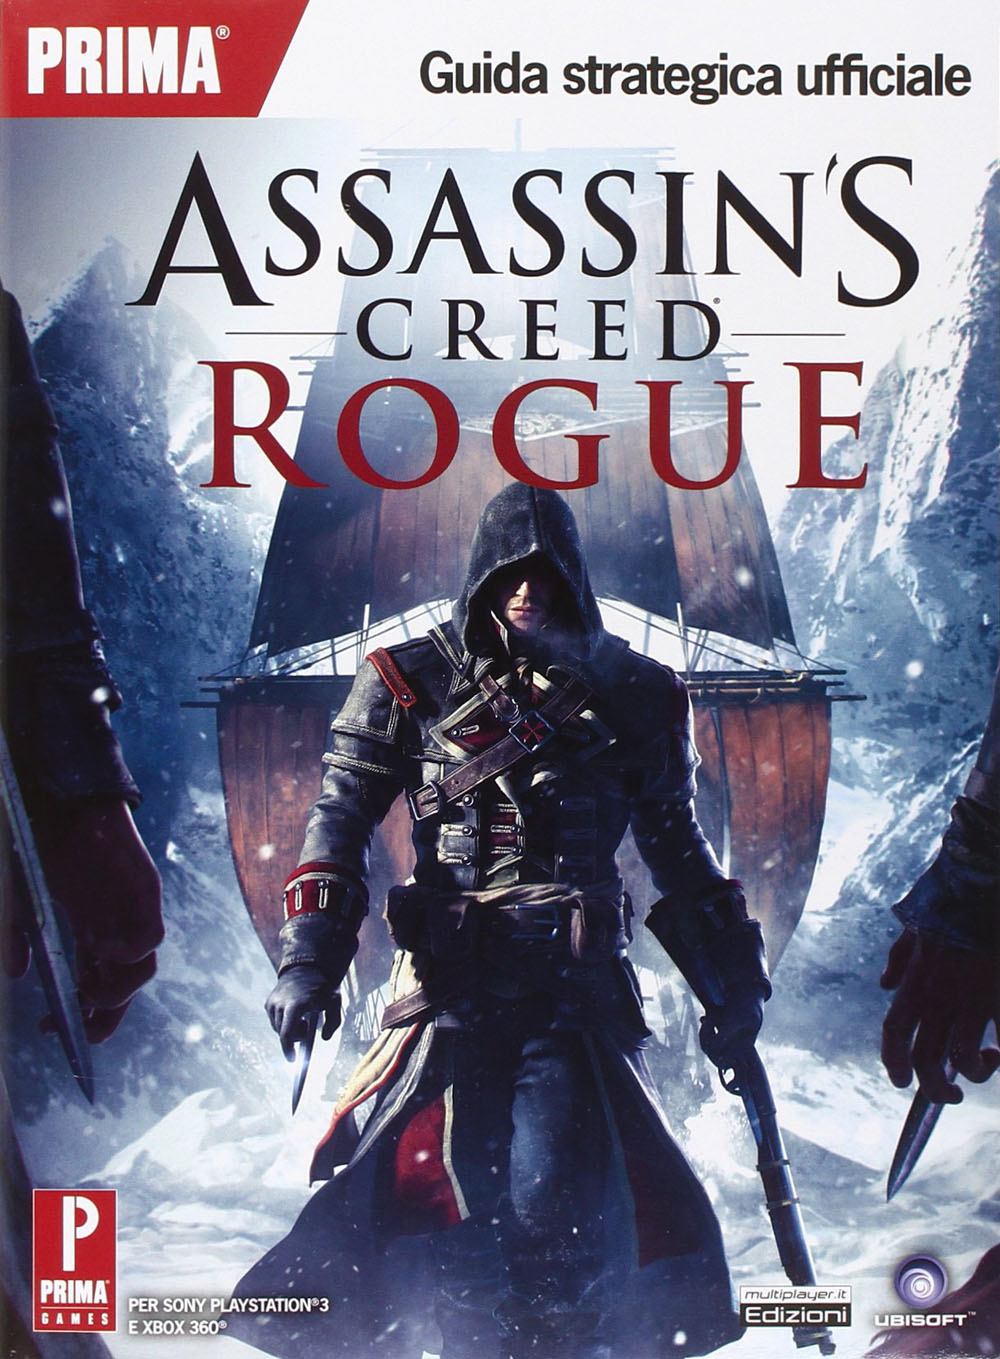 Libri Assassin's Creed Rogue. Guida Strategica Ufficiale NUOVO SIGILLATO, EDIZIONE DEL 13/11/2014 SUBITO DISPONIBILE